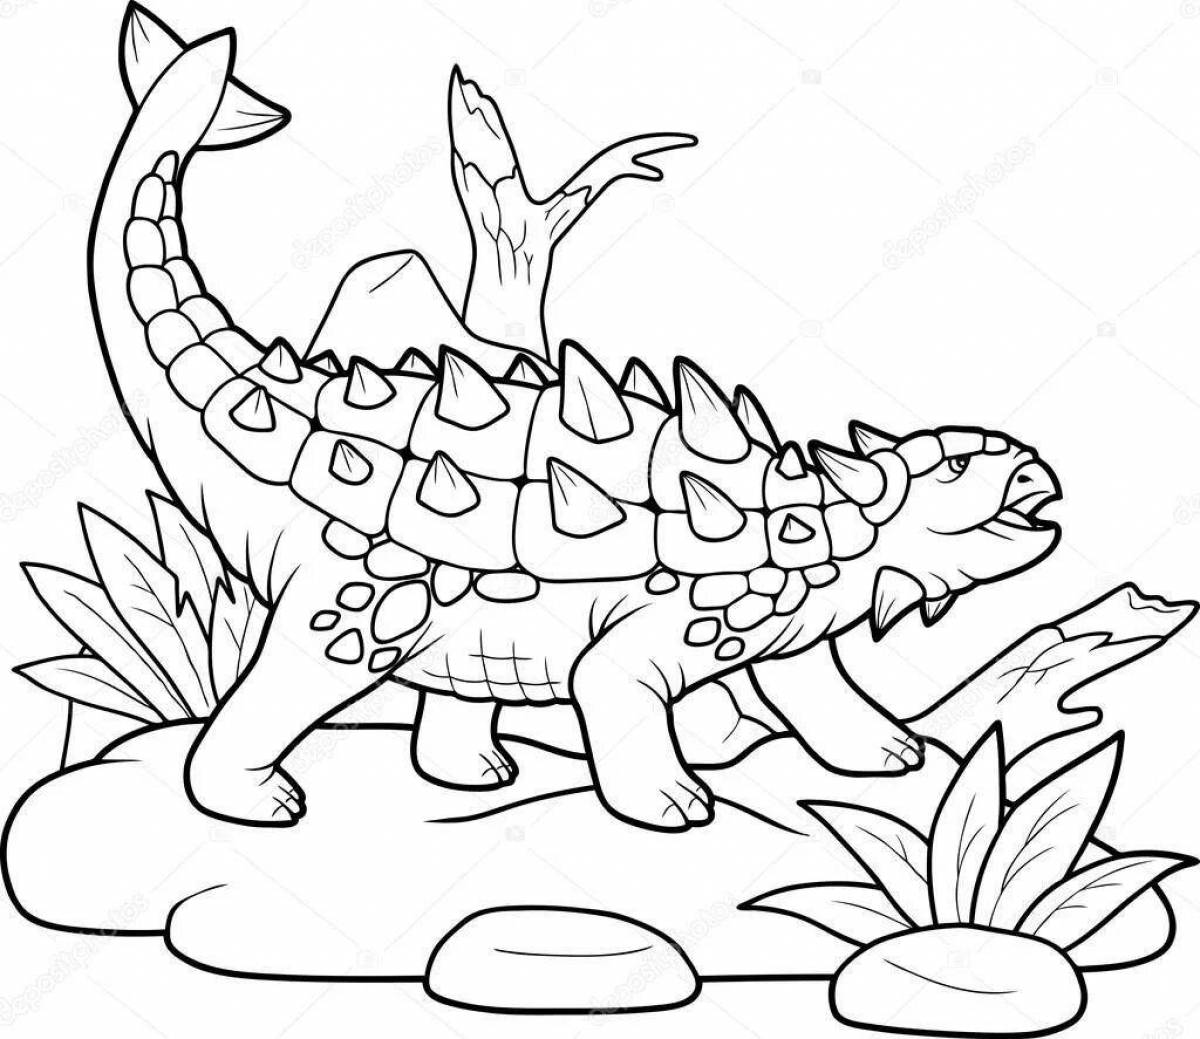 Динозавр раскраска черно-белый Анкилозавр